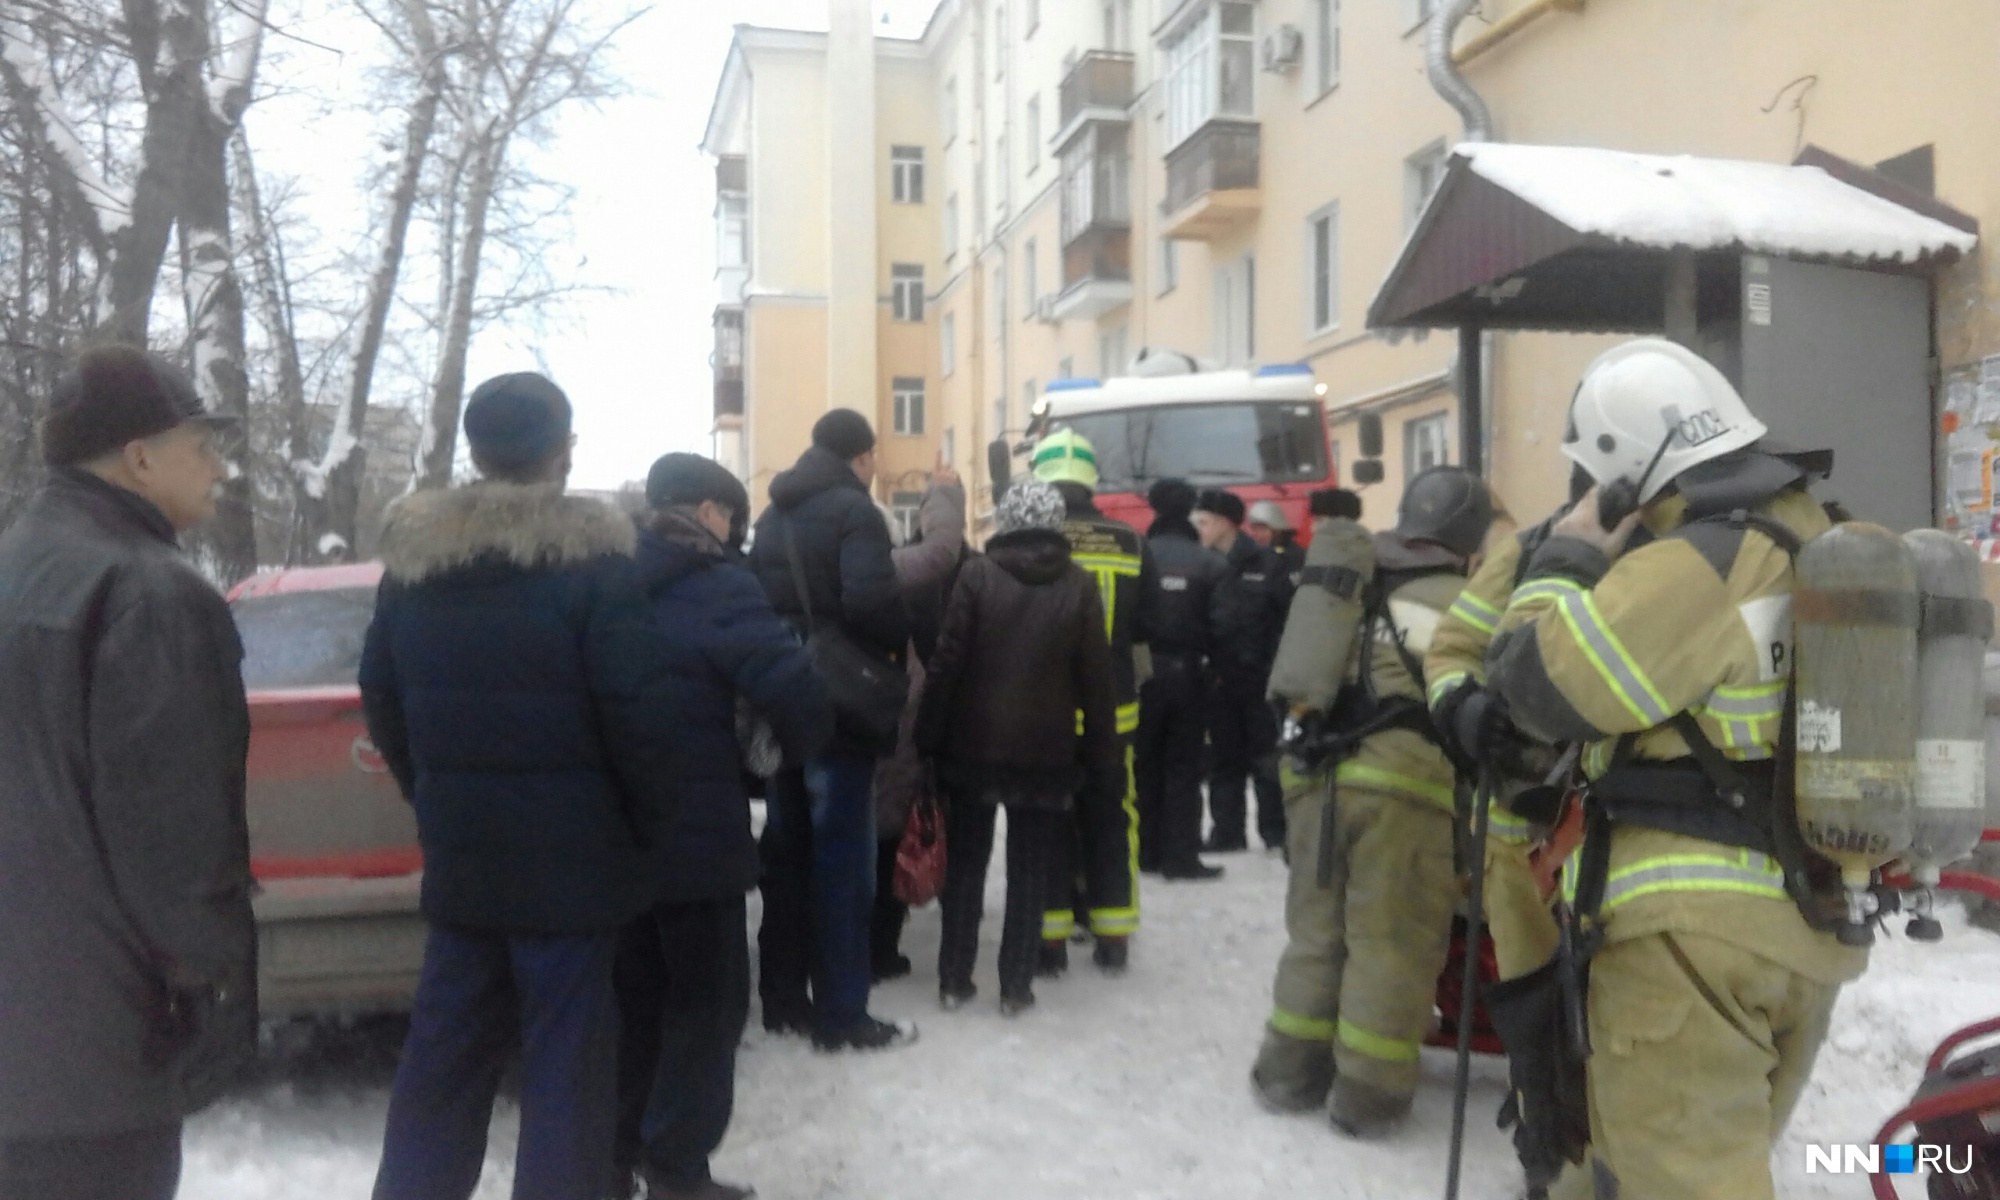 Публикуем фото и подробности с места смертельного пожара на проспекте Ленина